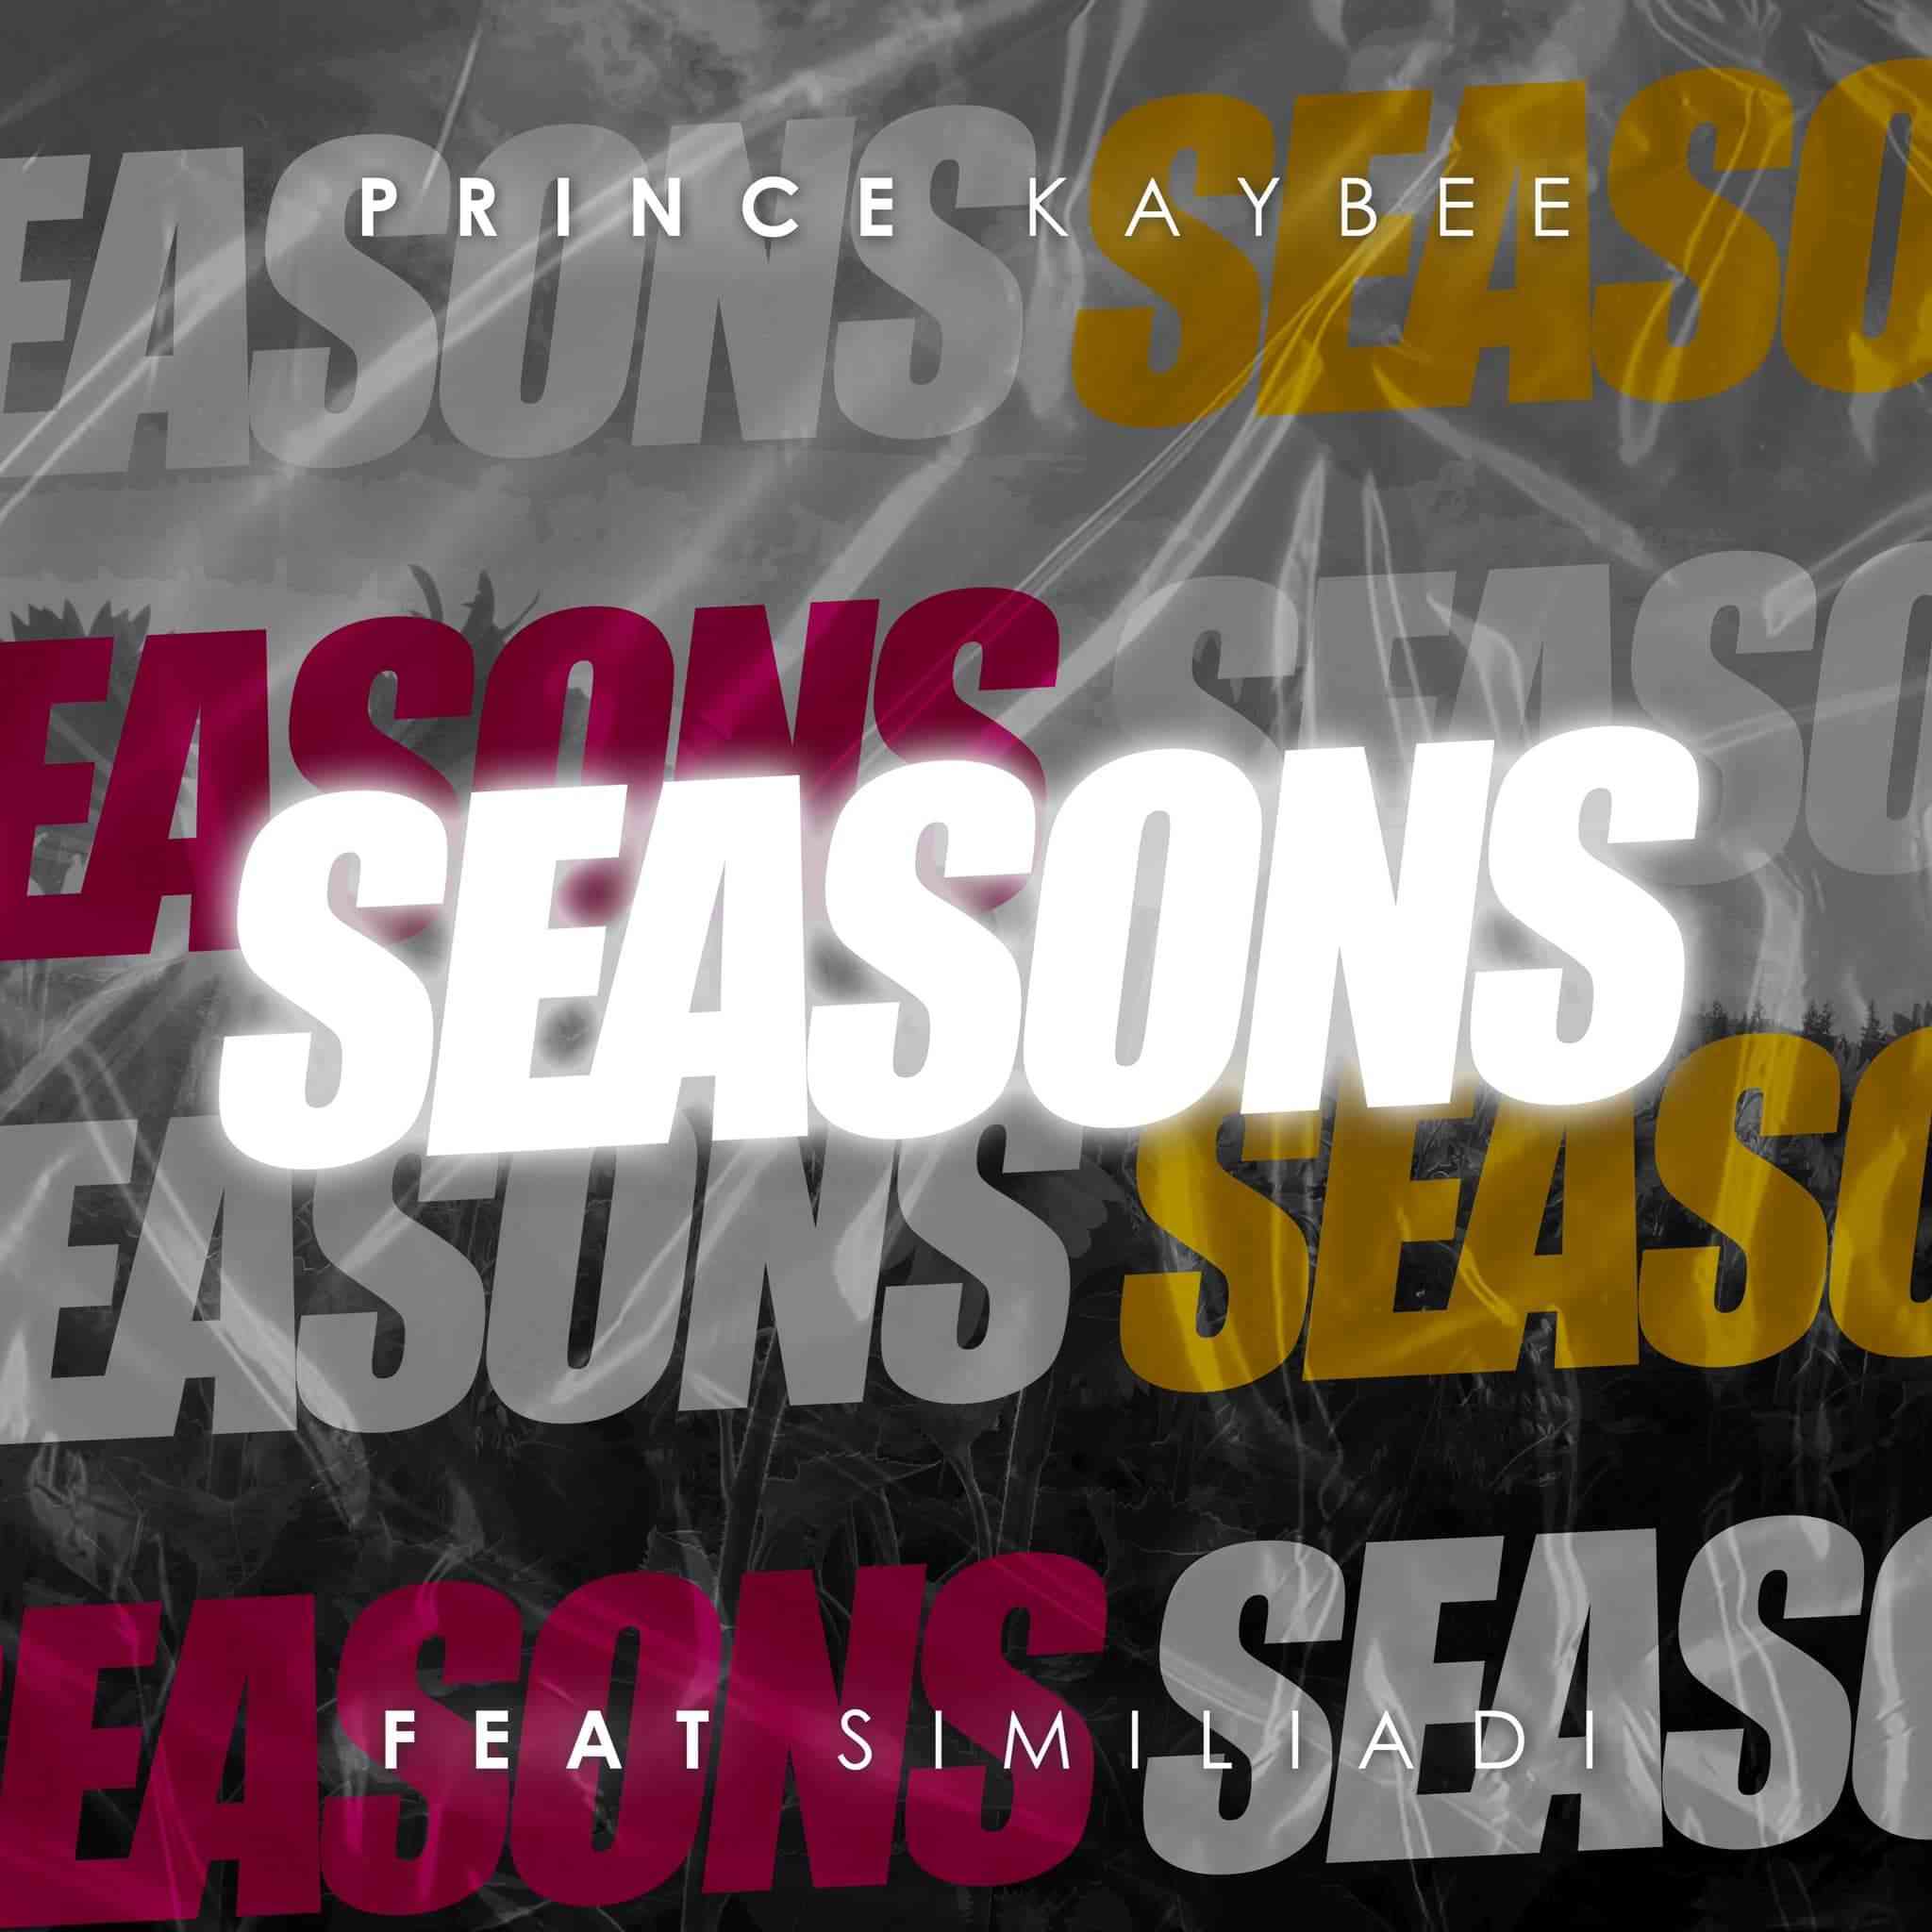 Prince Kaybee Drop Seasons featuring Simi Liadi